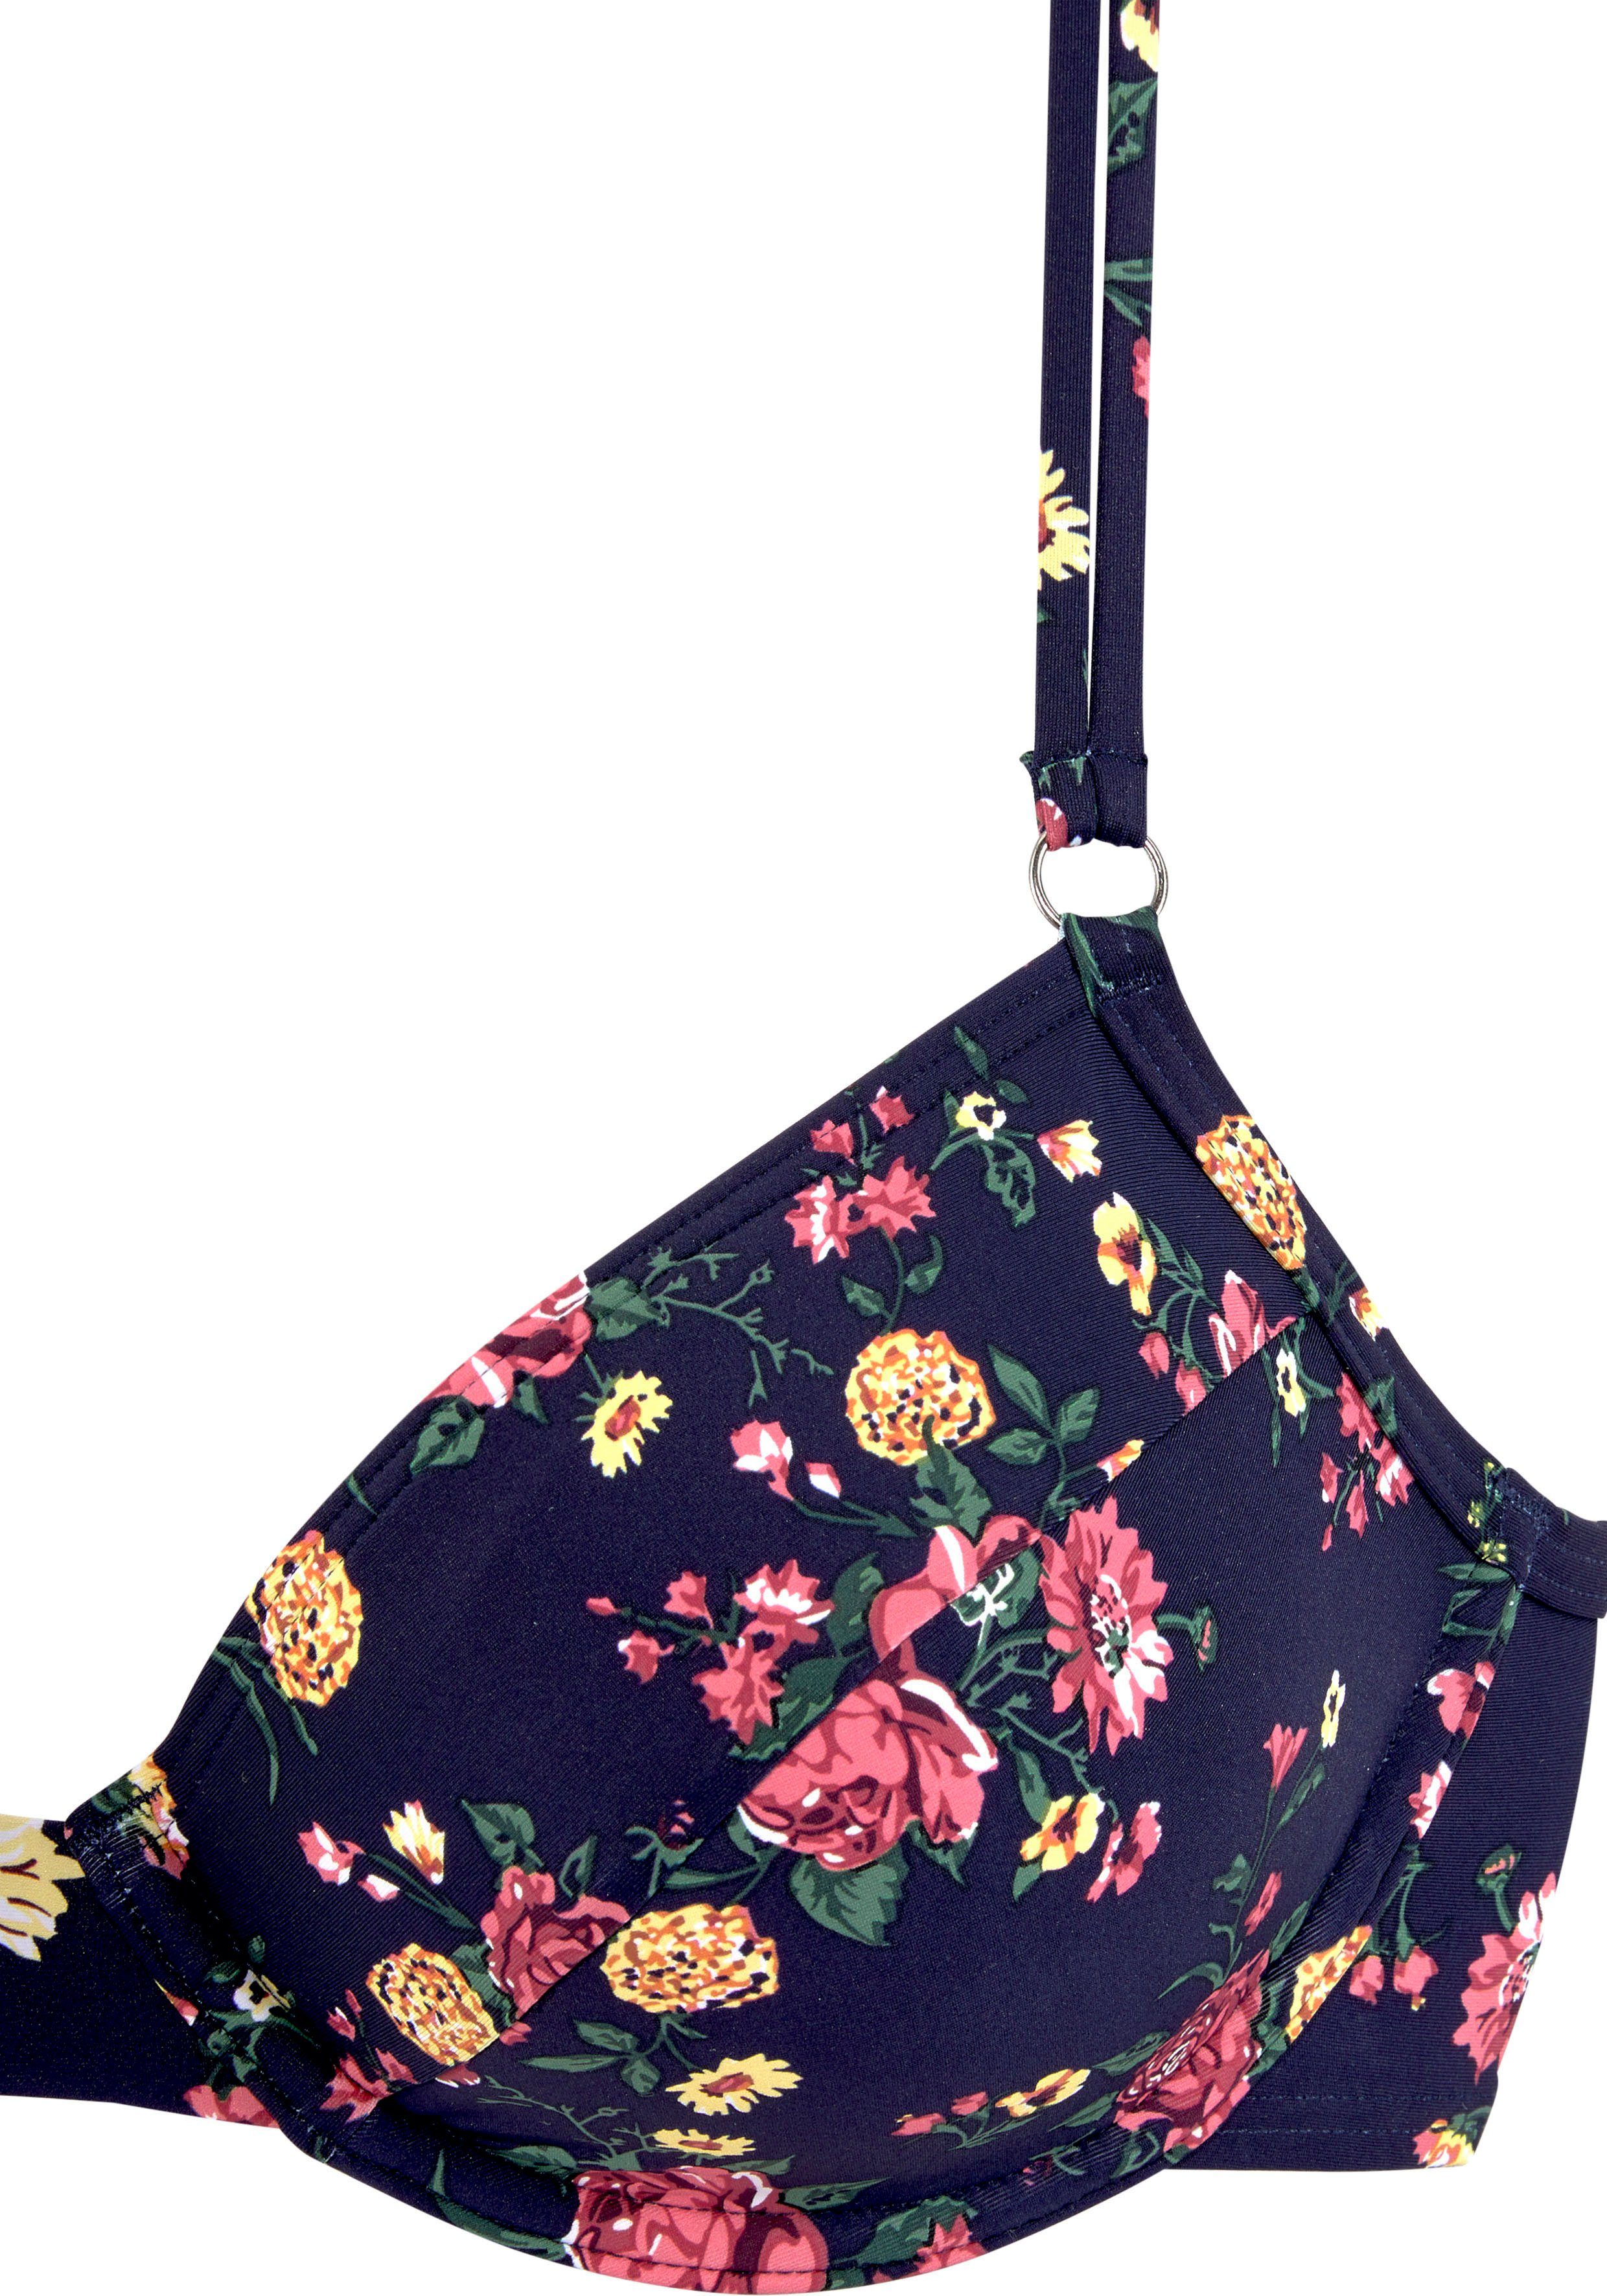 LASCANA Blumendesign romantischem Bügel-Bikini mit